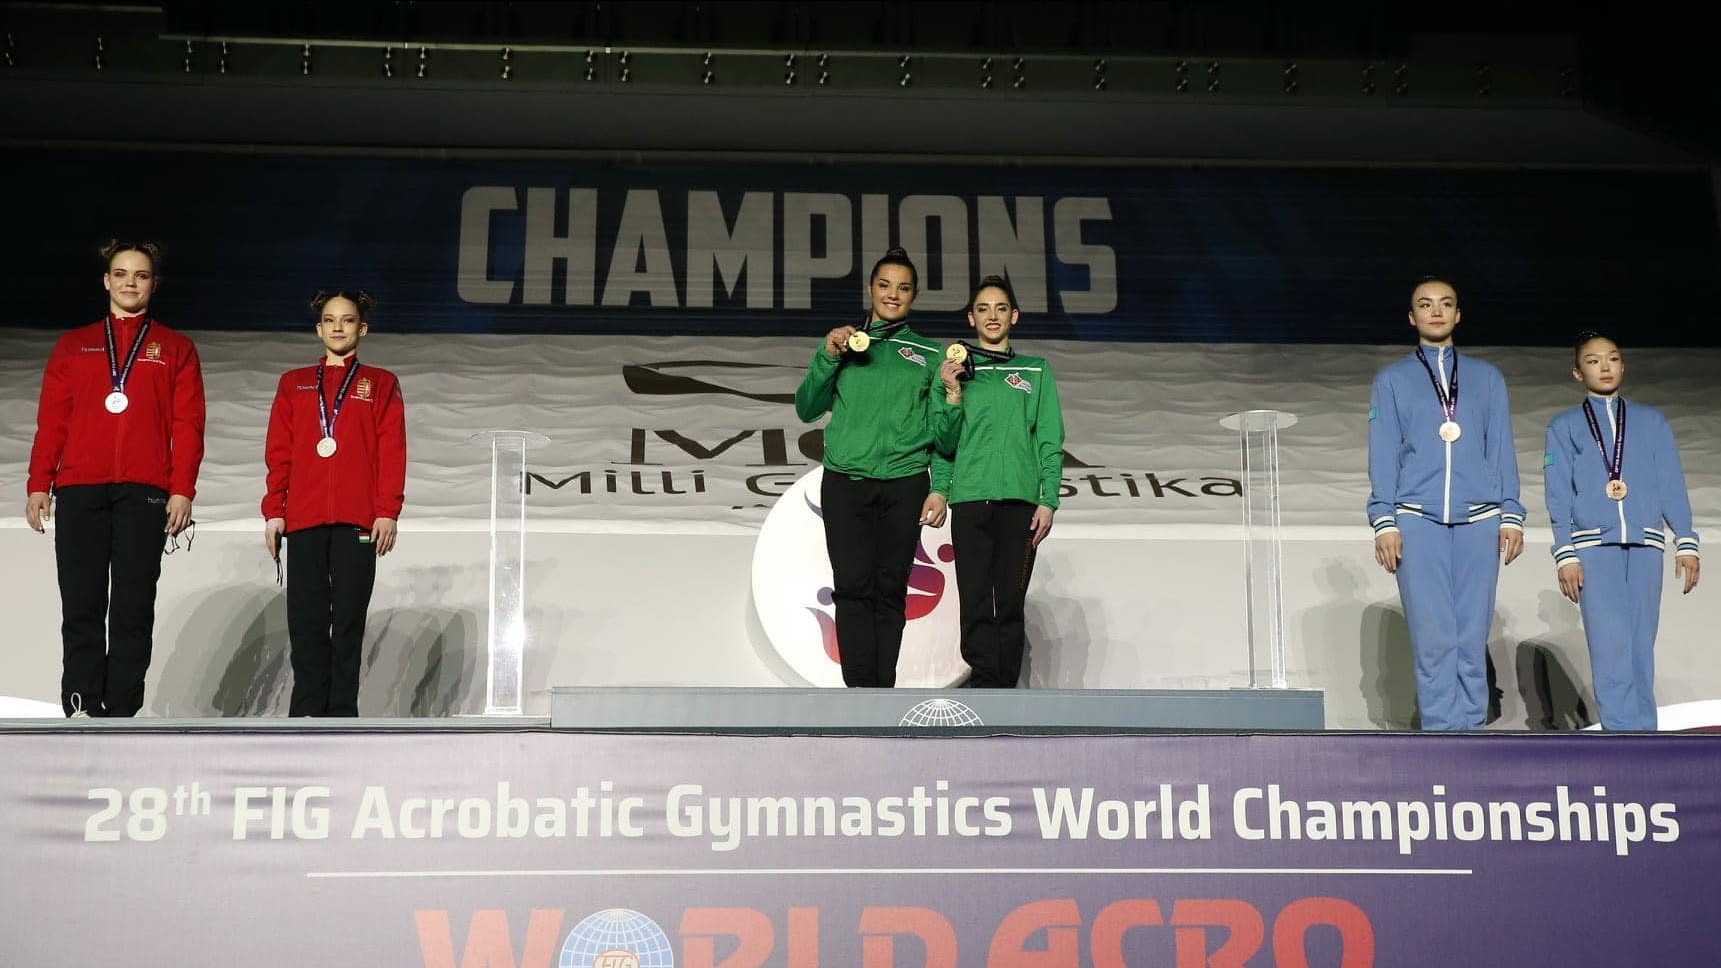 Ezüstérmes a női páros az akrobatikus torna világbajnokságon